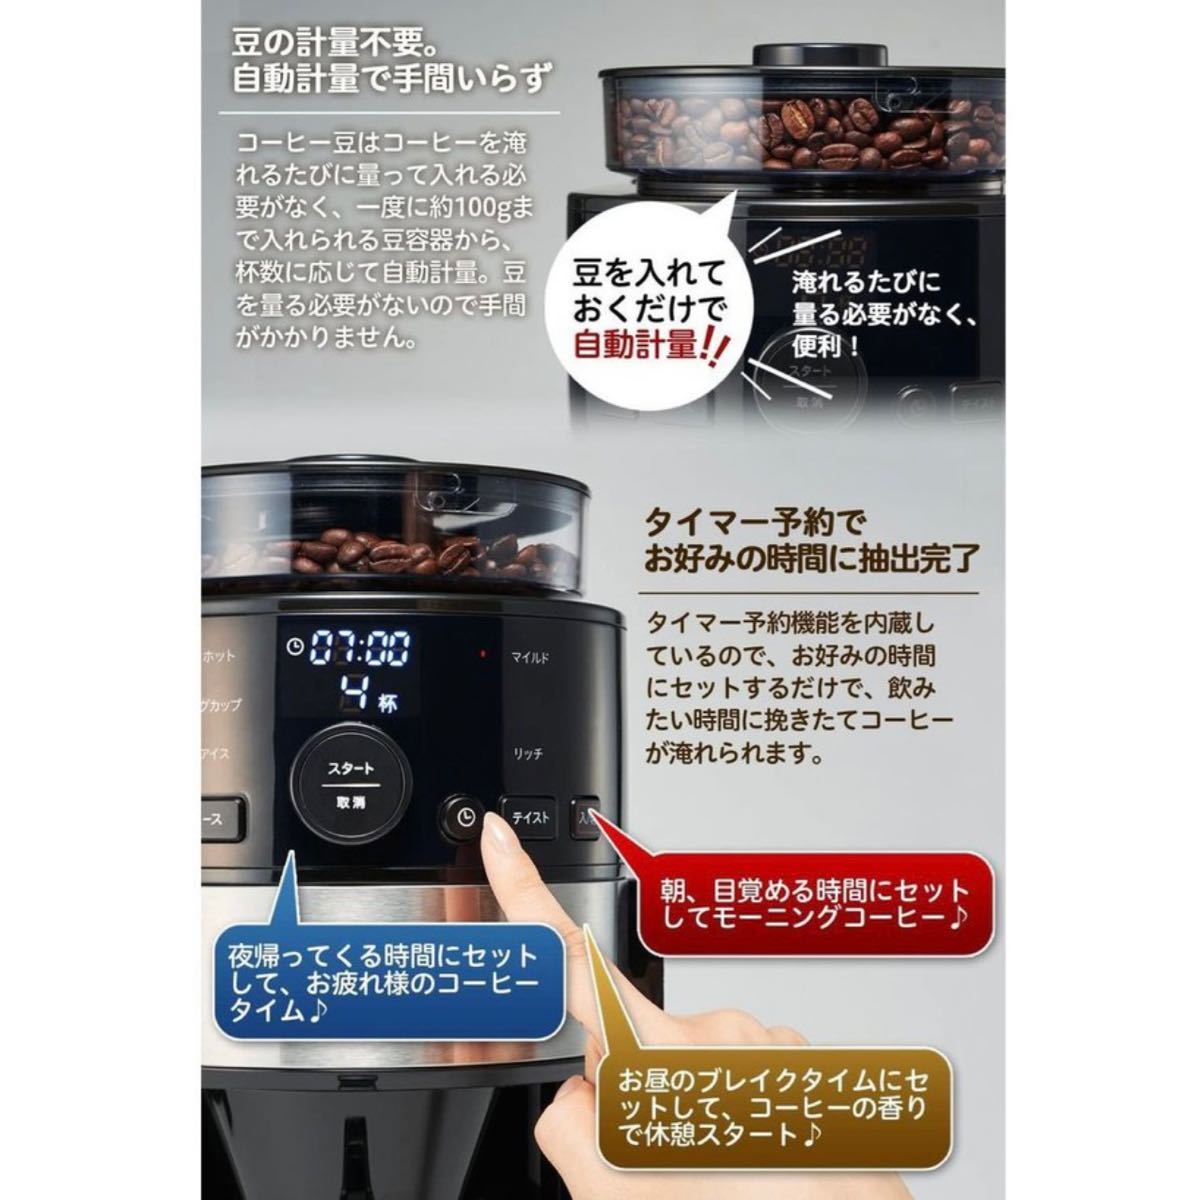 シロカ siroca コーン式全自動コーヒーメーカー シルバー SC-C122